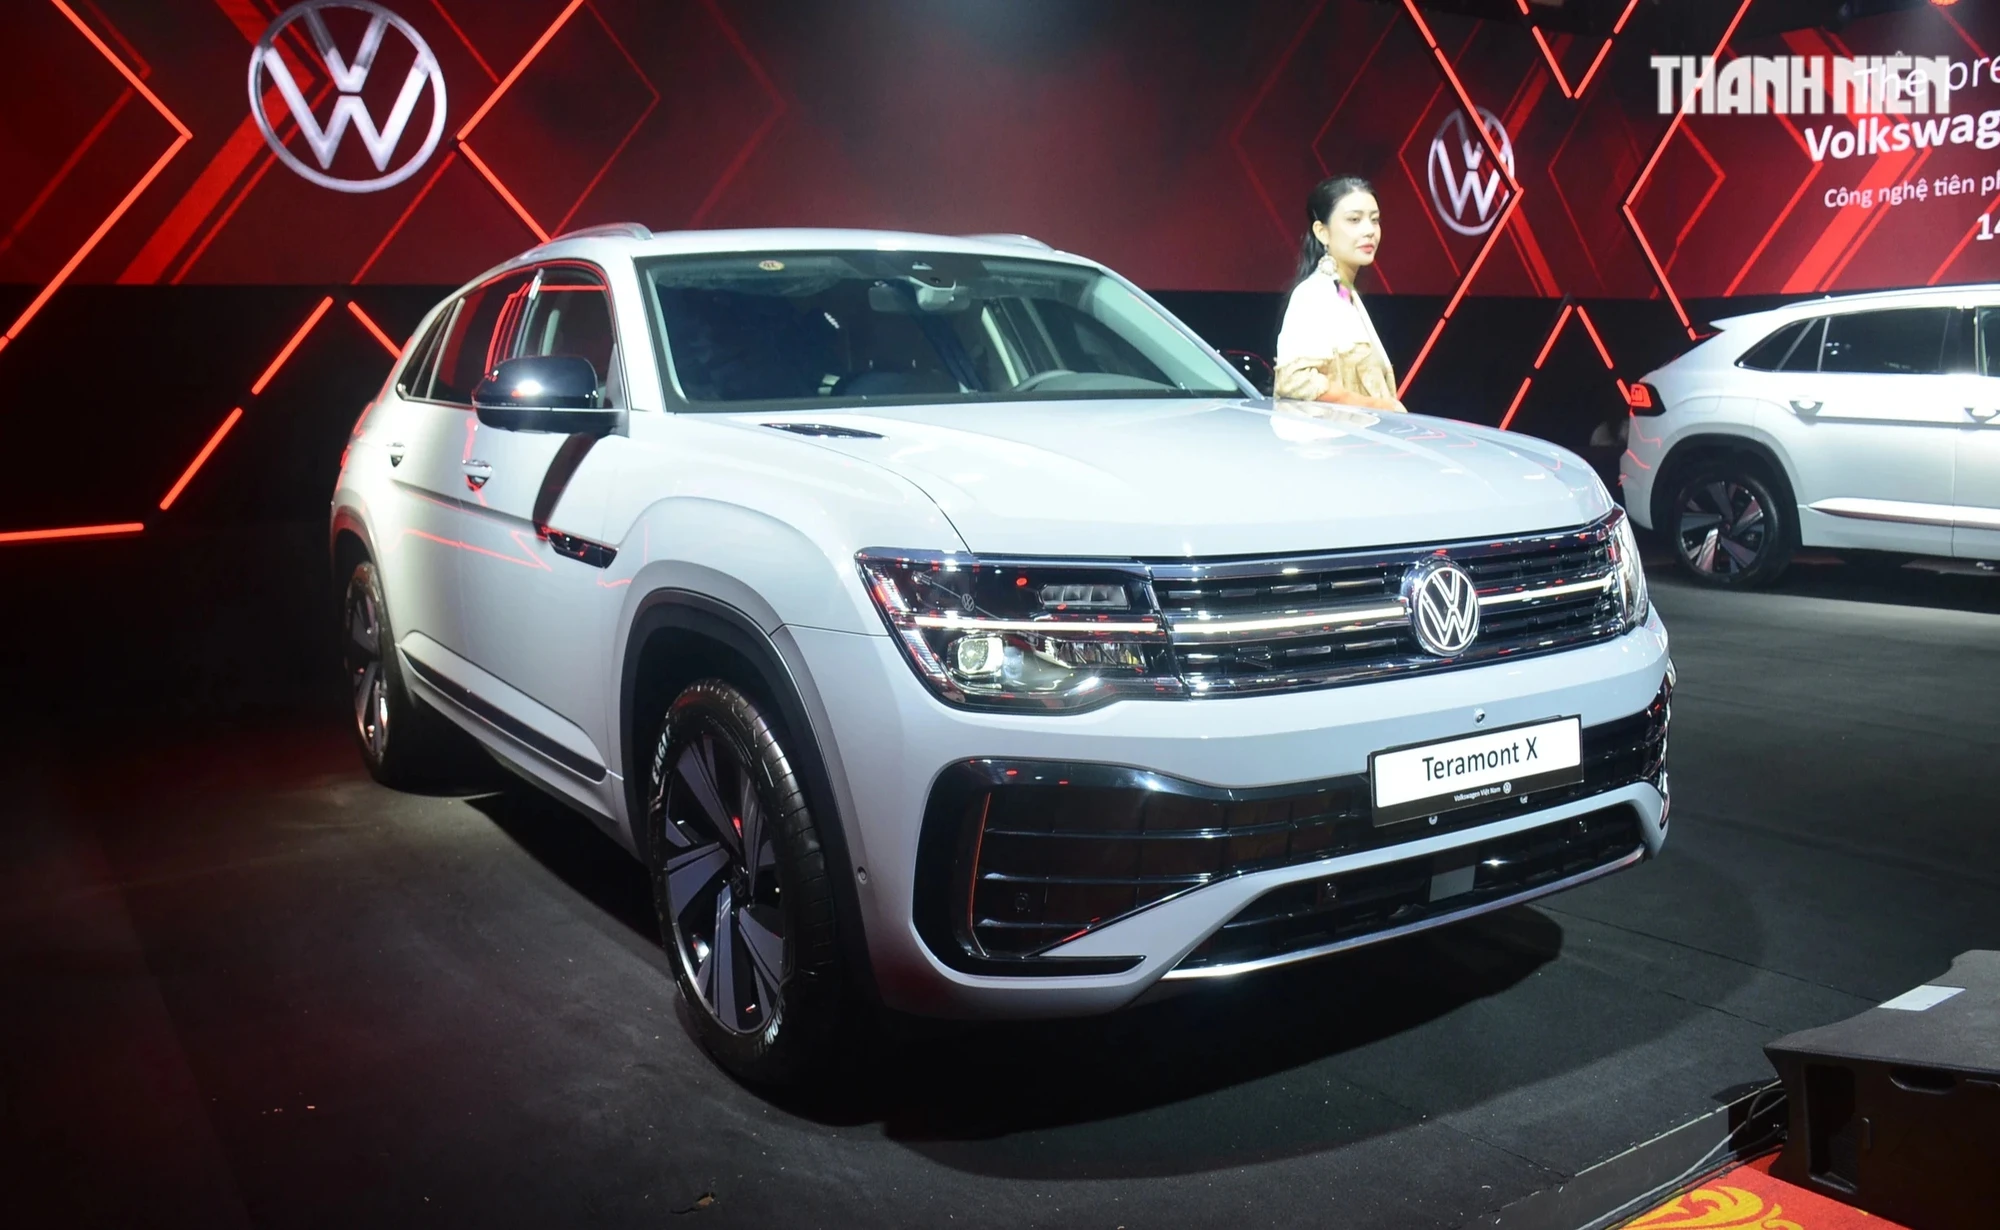 Volkswagen Teramont X có 5 chỗ ngồi, giá từ 1,998 tỉ đồng tại Việt Nam- Ảnh 2.